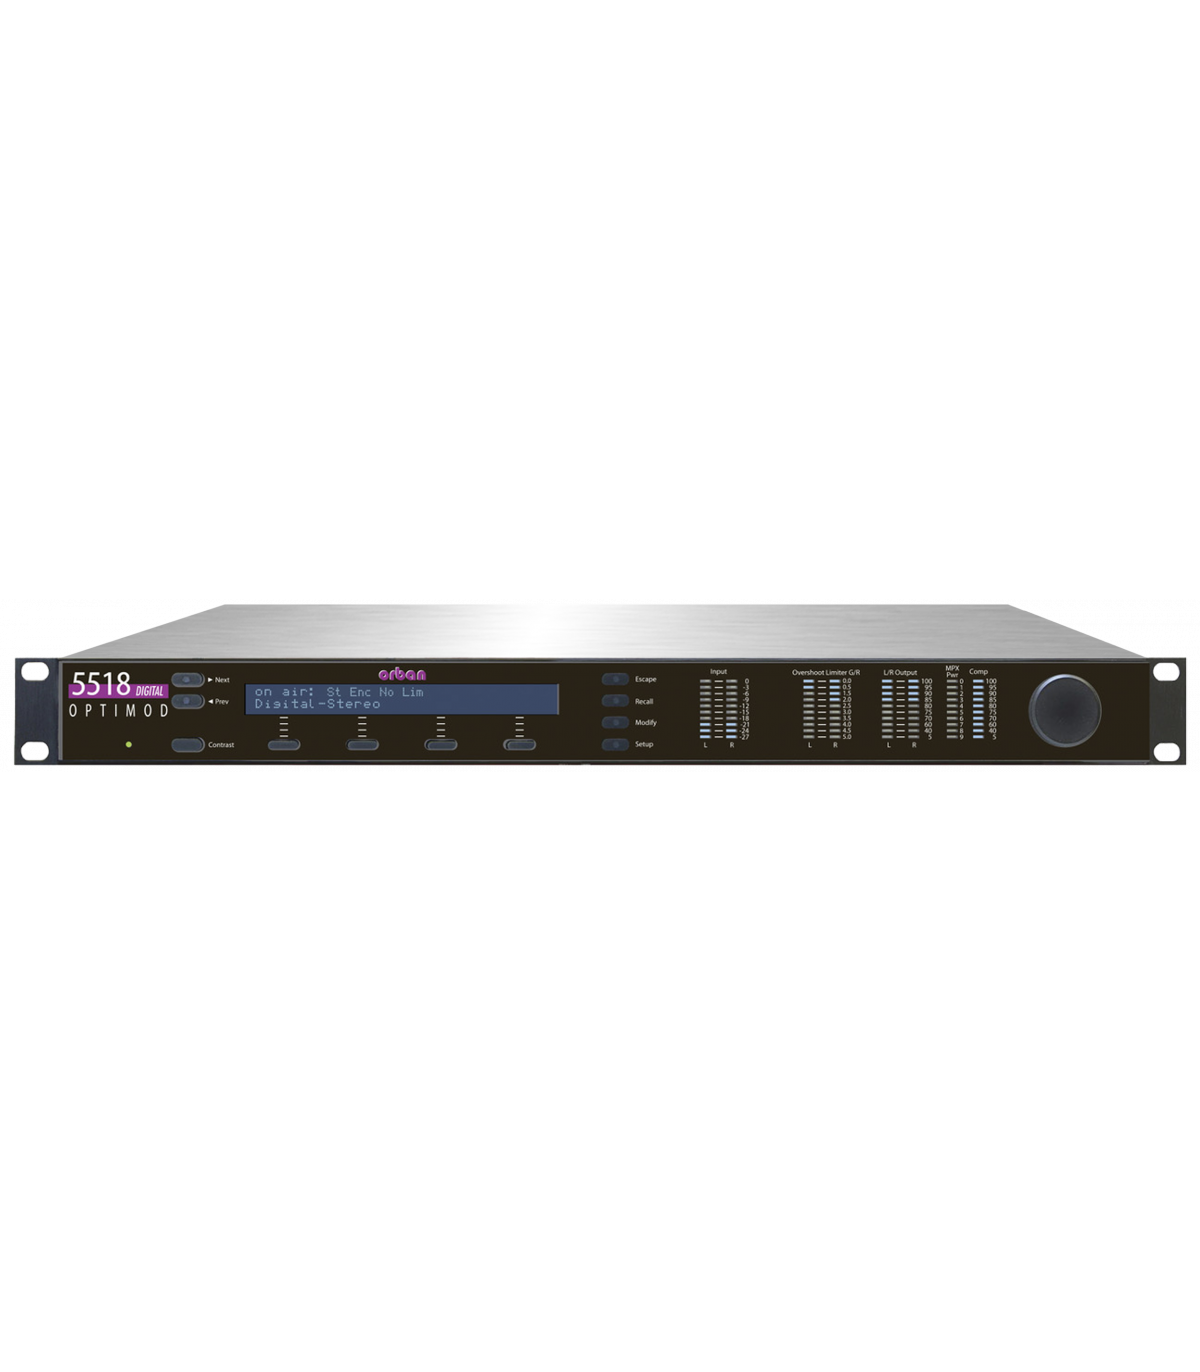 5518 OPTIMOD Orban Processeur audio FM et encodeur stéréo-TEKO